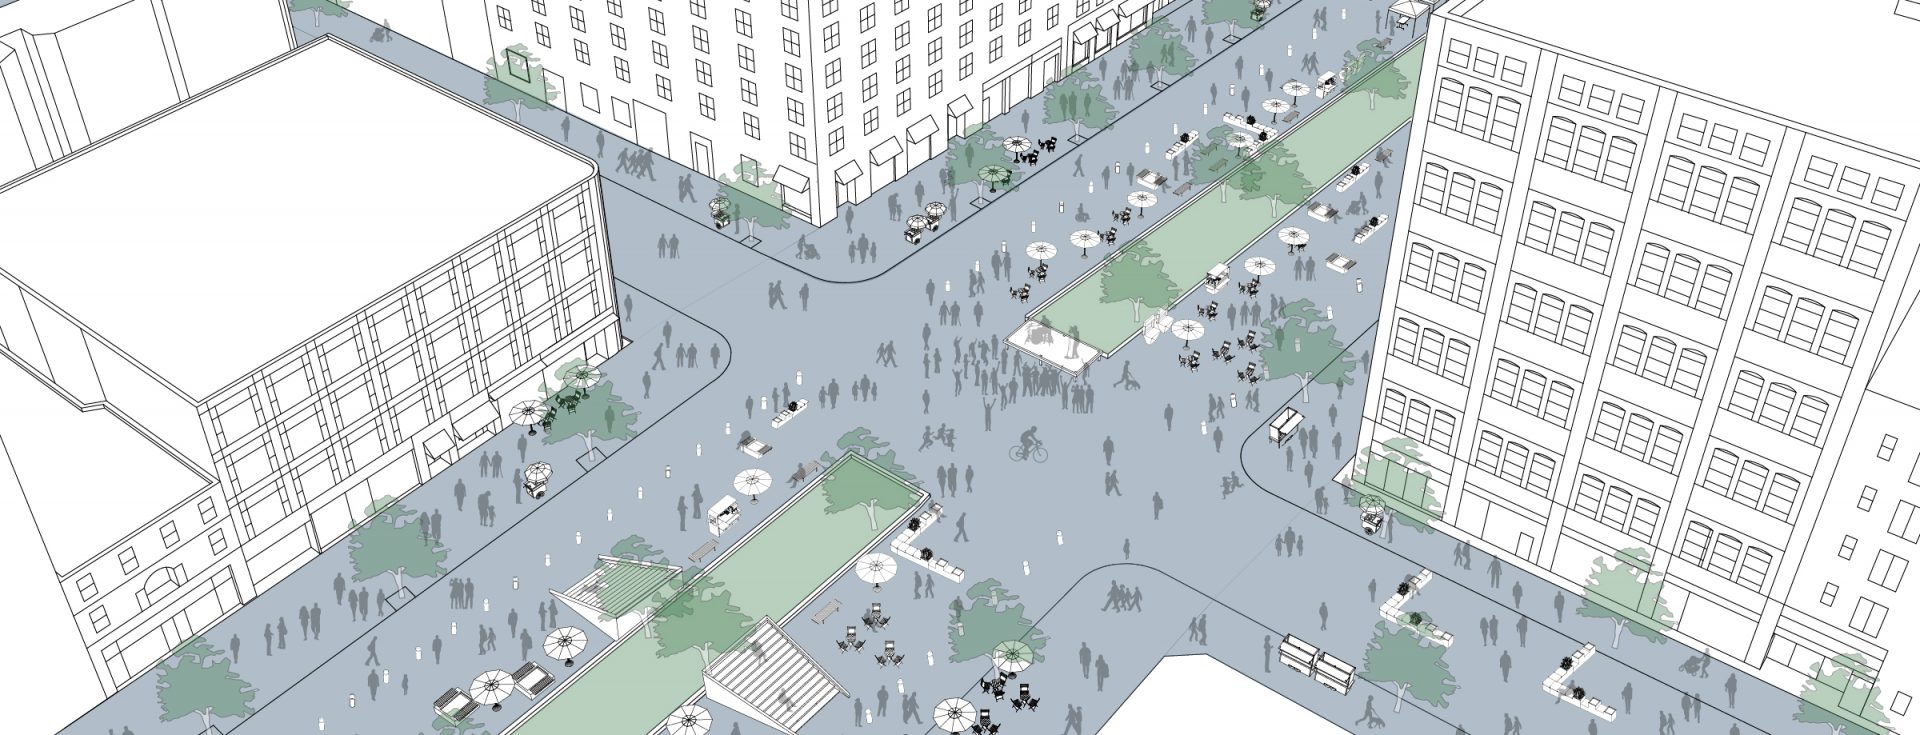 Street Plans + Alliance for Biking & Walking Looking for 2015 Open Streets Summit Host City.